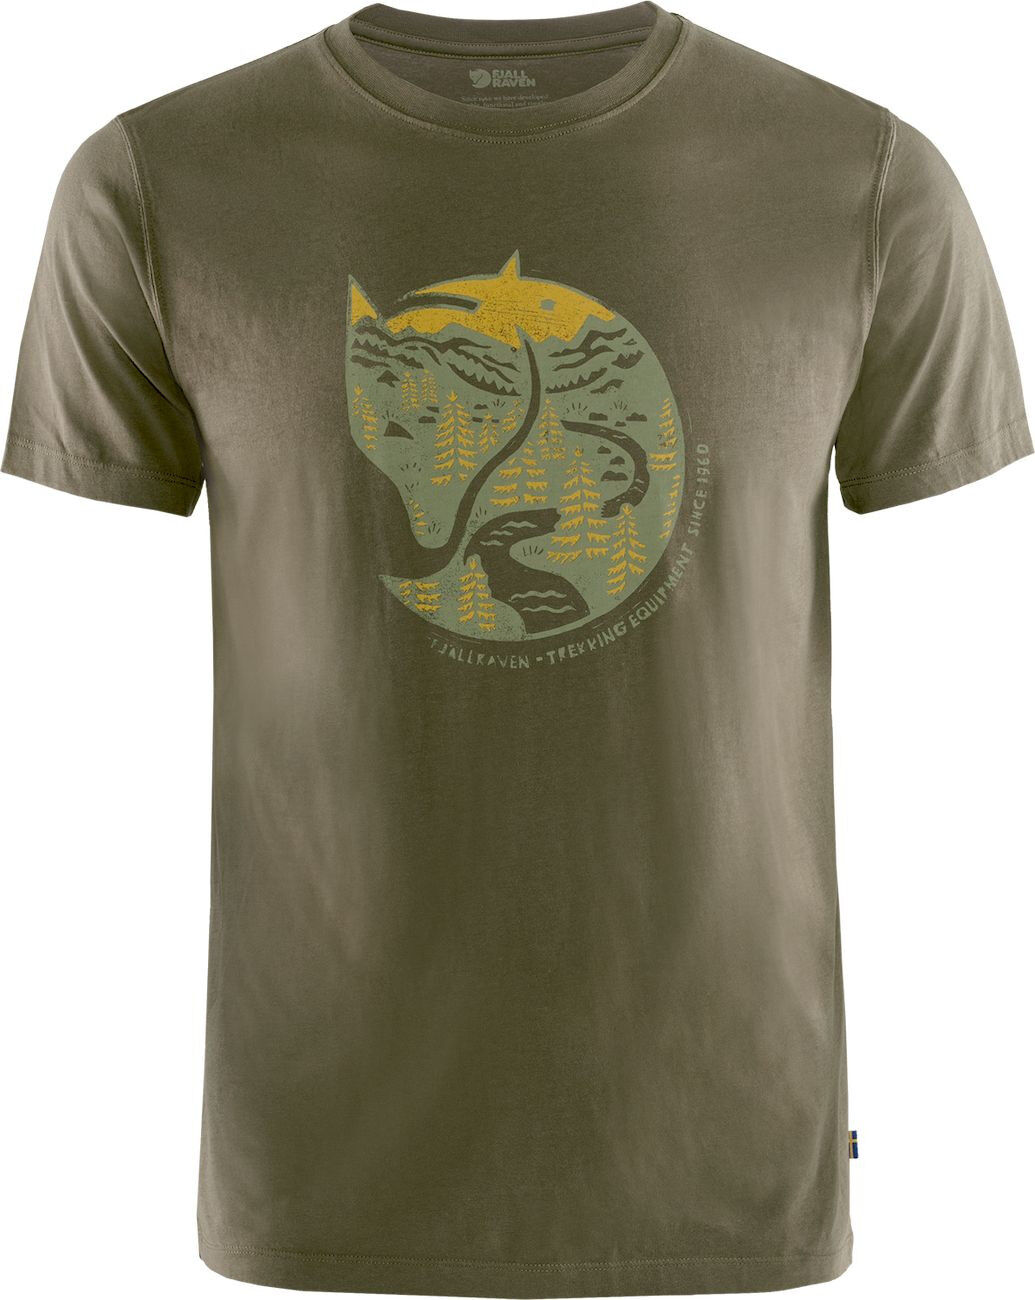 Fjällräven Arctic Fox T-shirt - T-Shirt - Herren